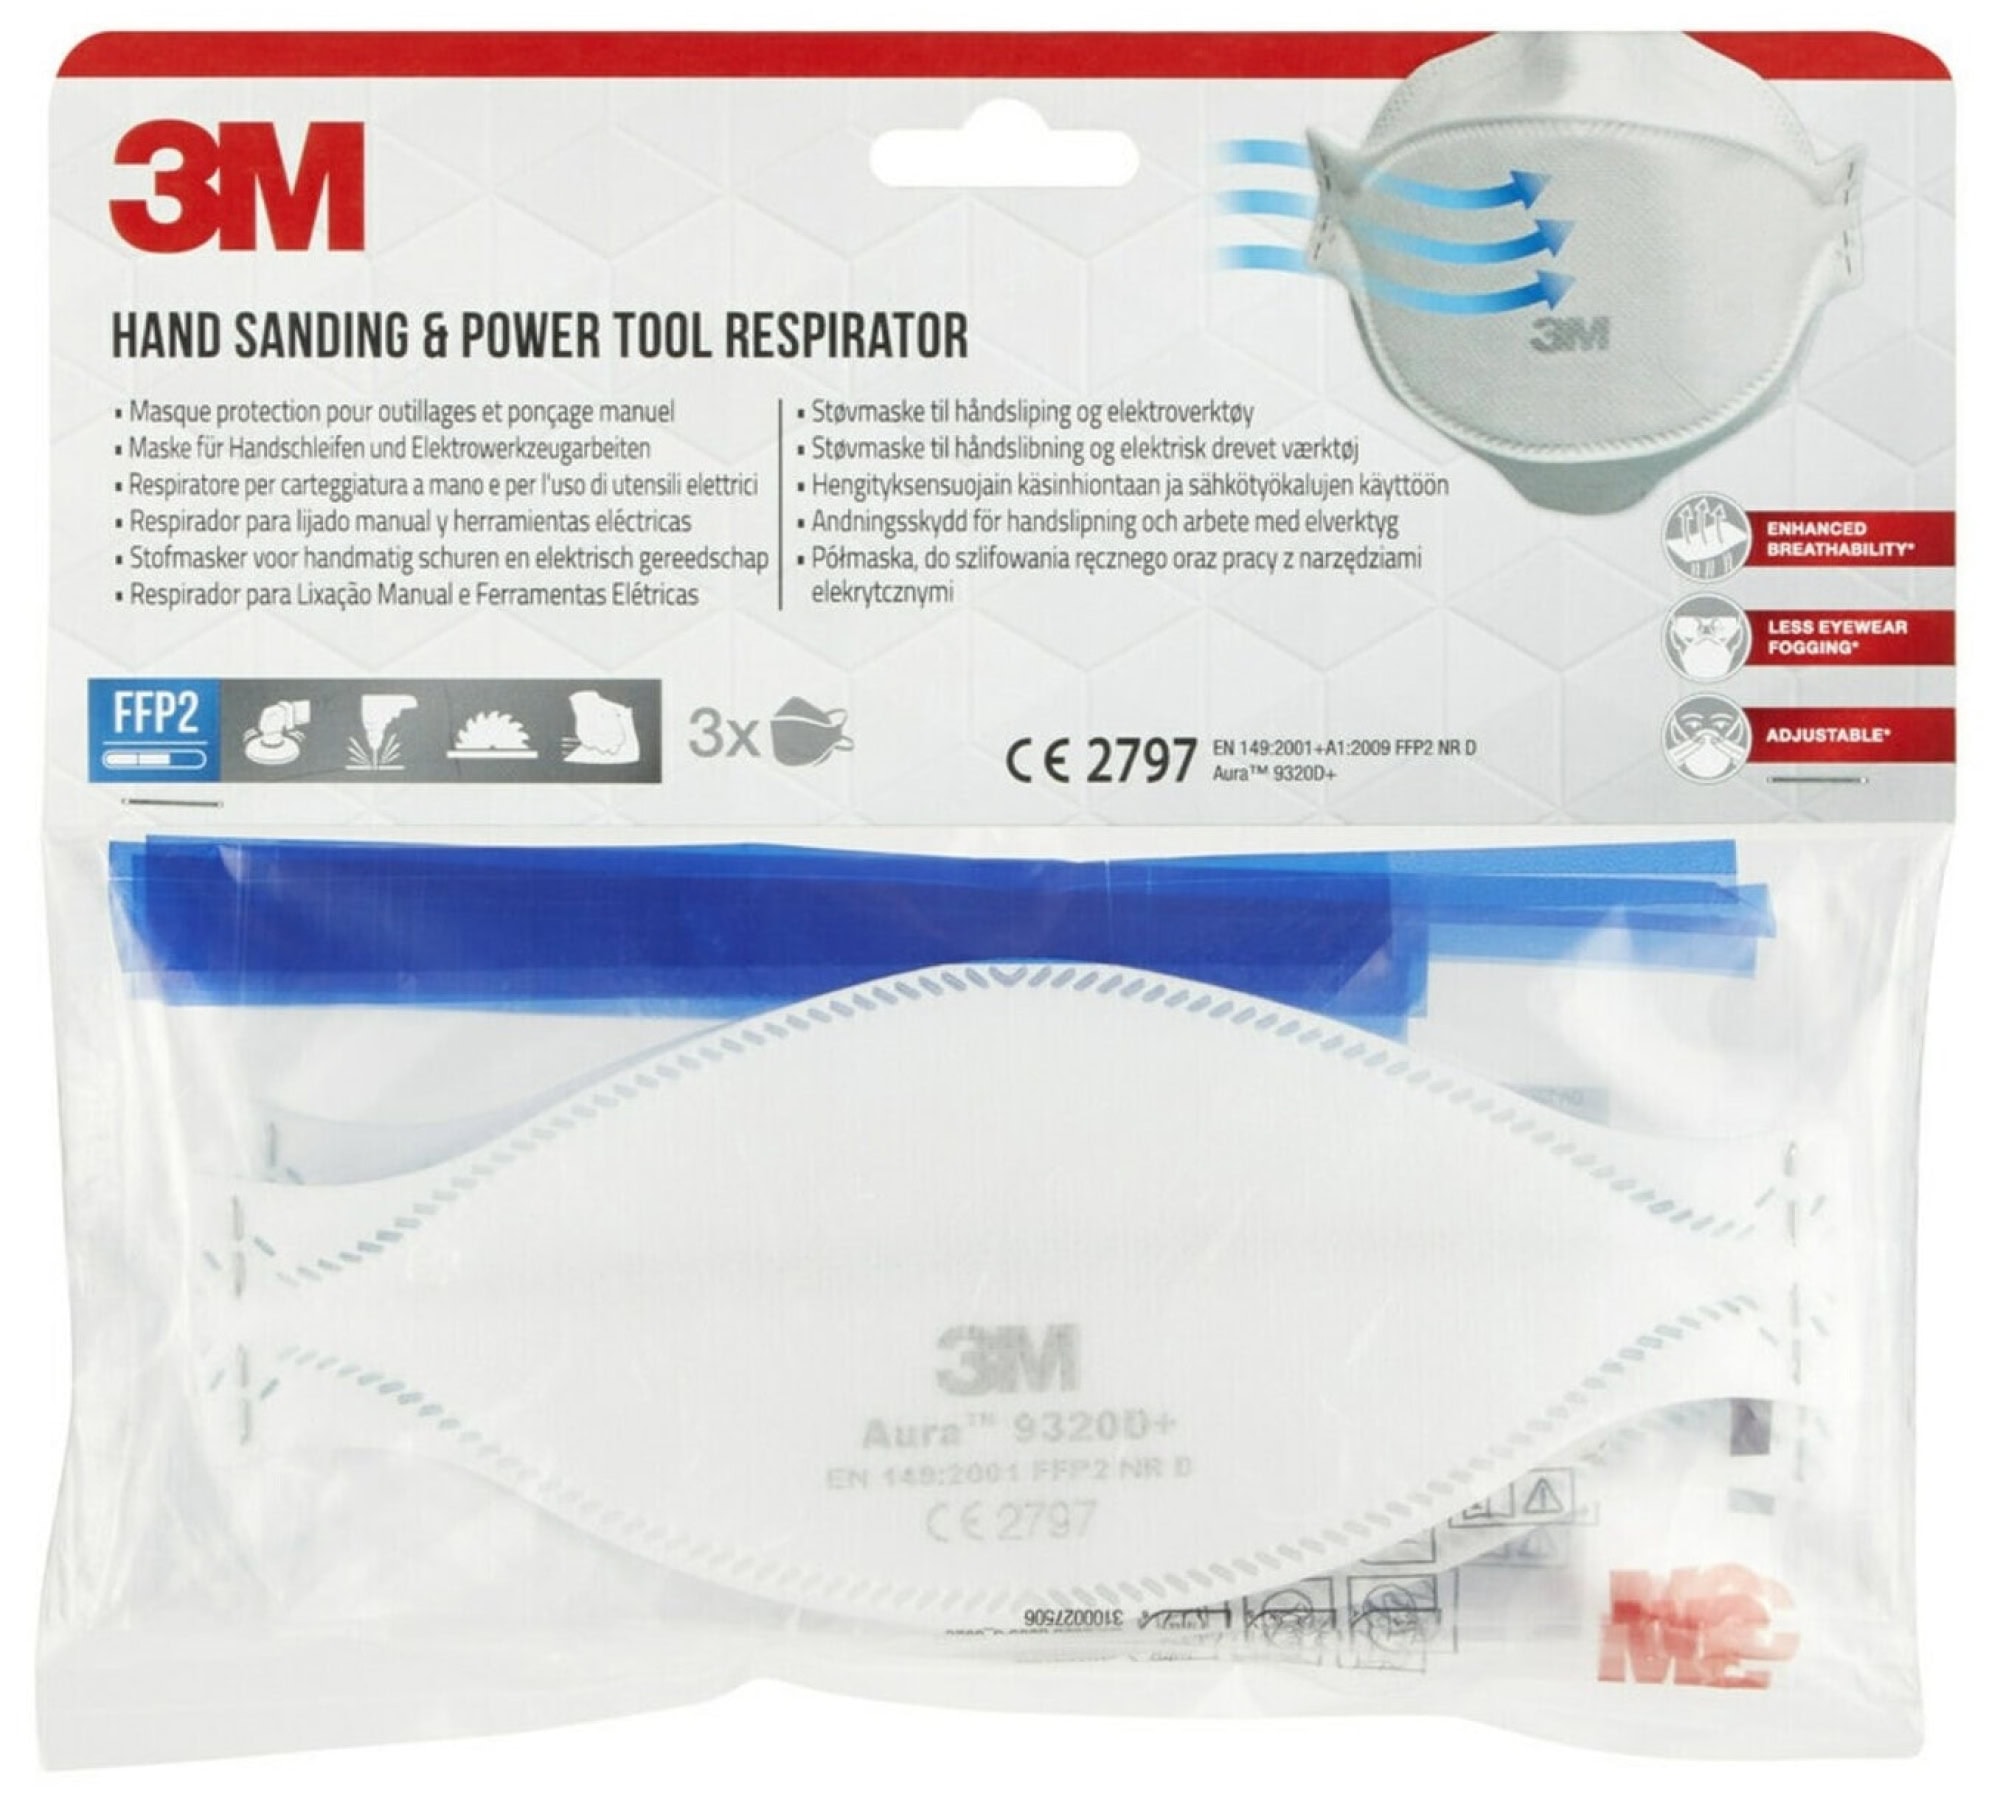 3M™ Aura™ Atemschutzmaske 9320PRO5 FFP2 NR D, Einzelhandelsvariante, Hygienisch einzelverpackt, 3 Stück pro Packung, Pandemiemaske